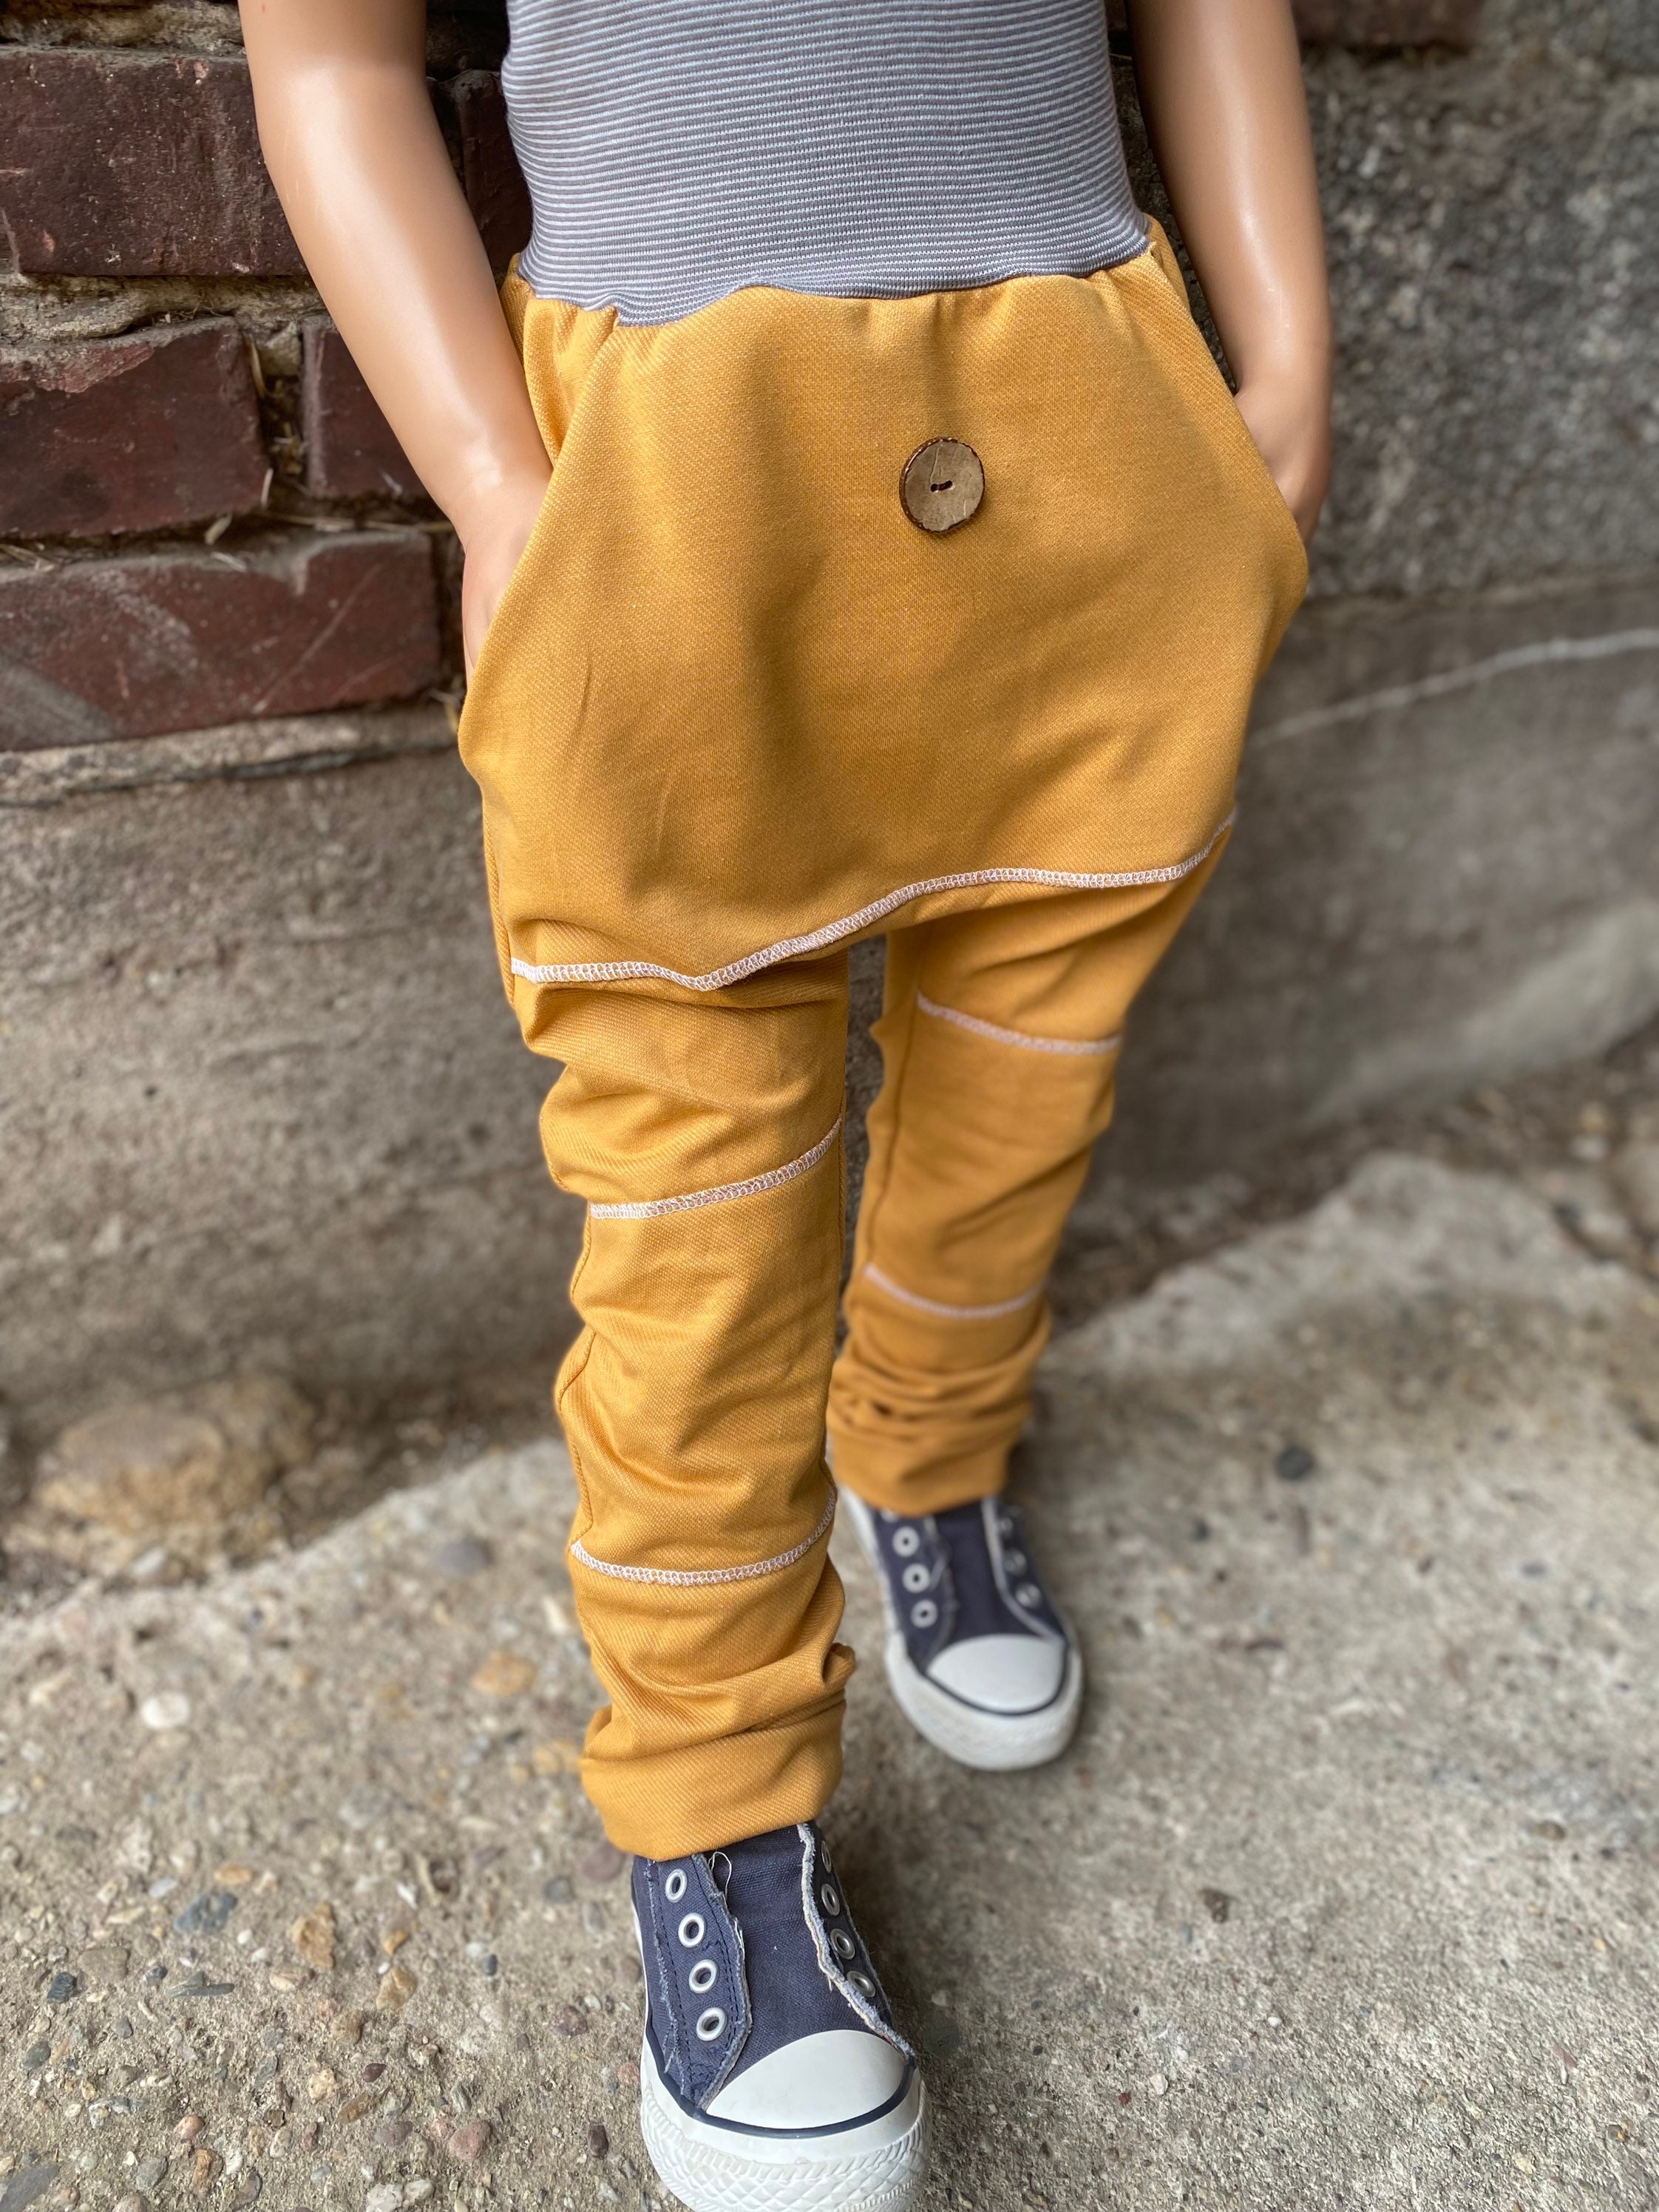 Regular Fit Pants Soft Jeans Girls Boys Baby Children's Clothing - Etsy  Denmark